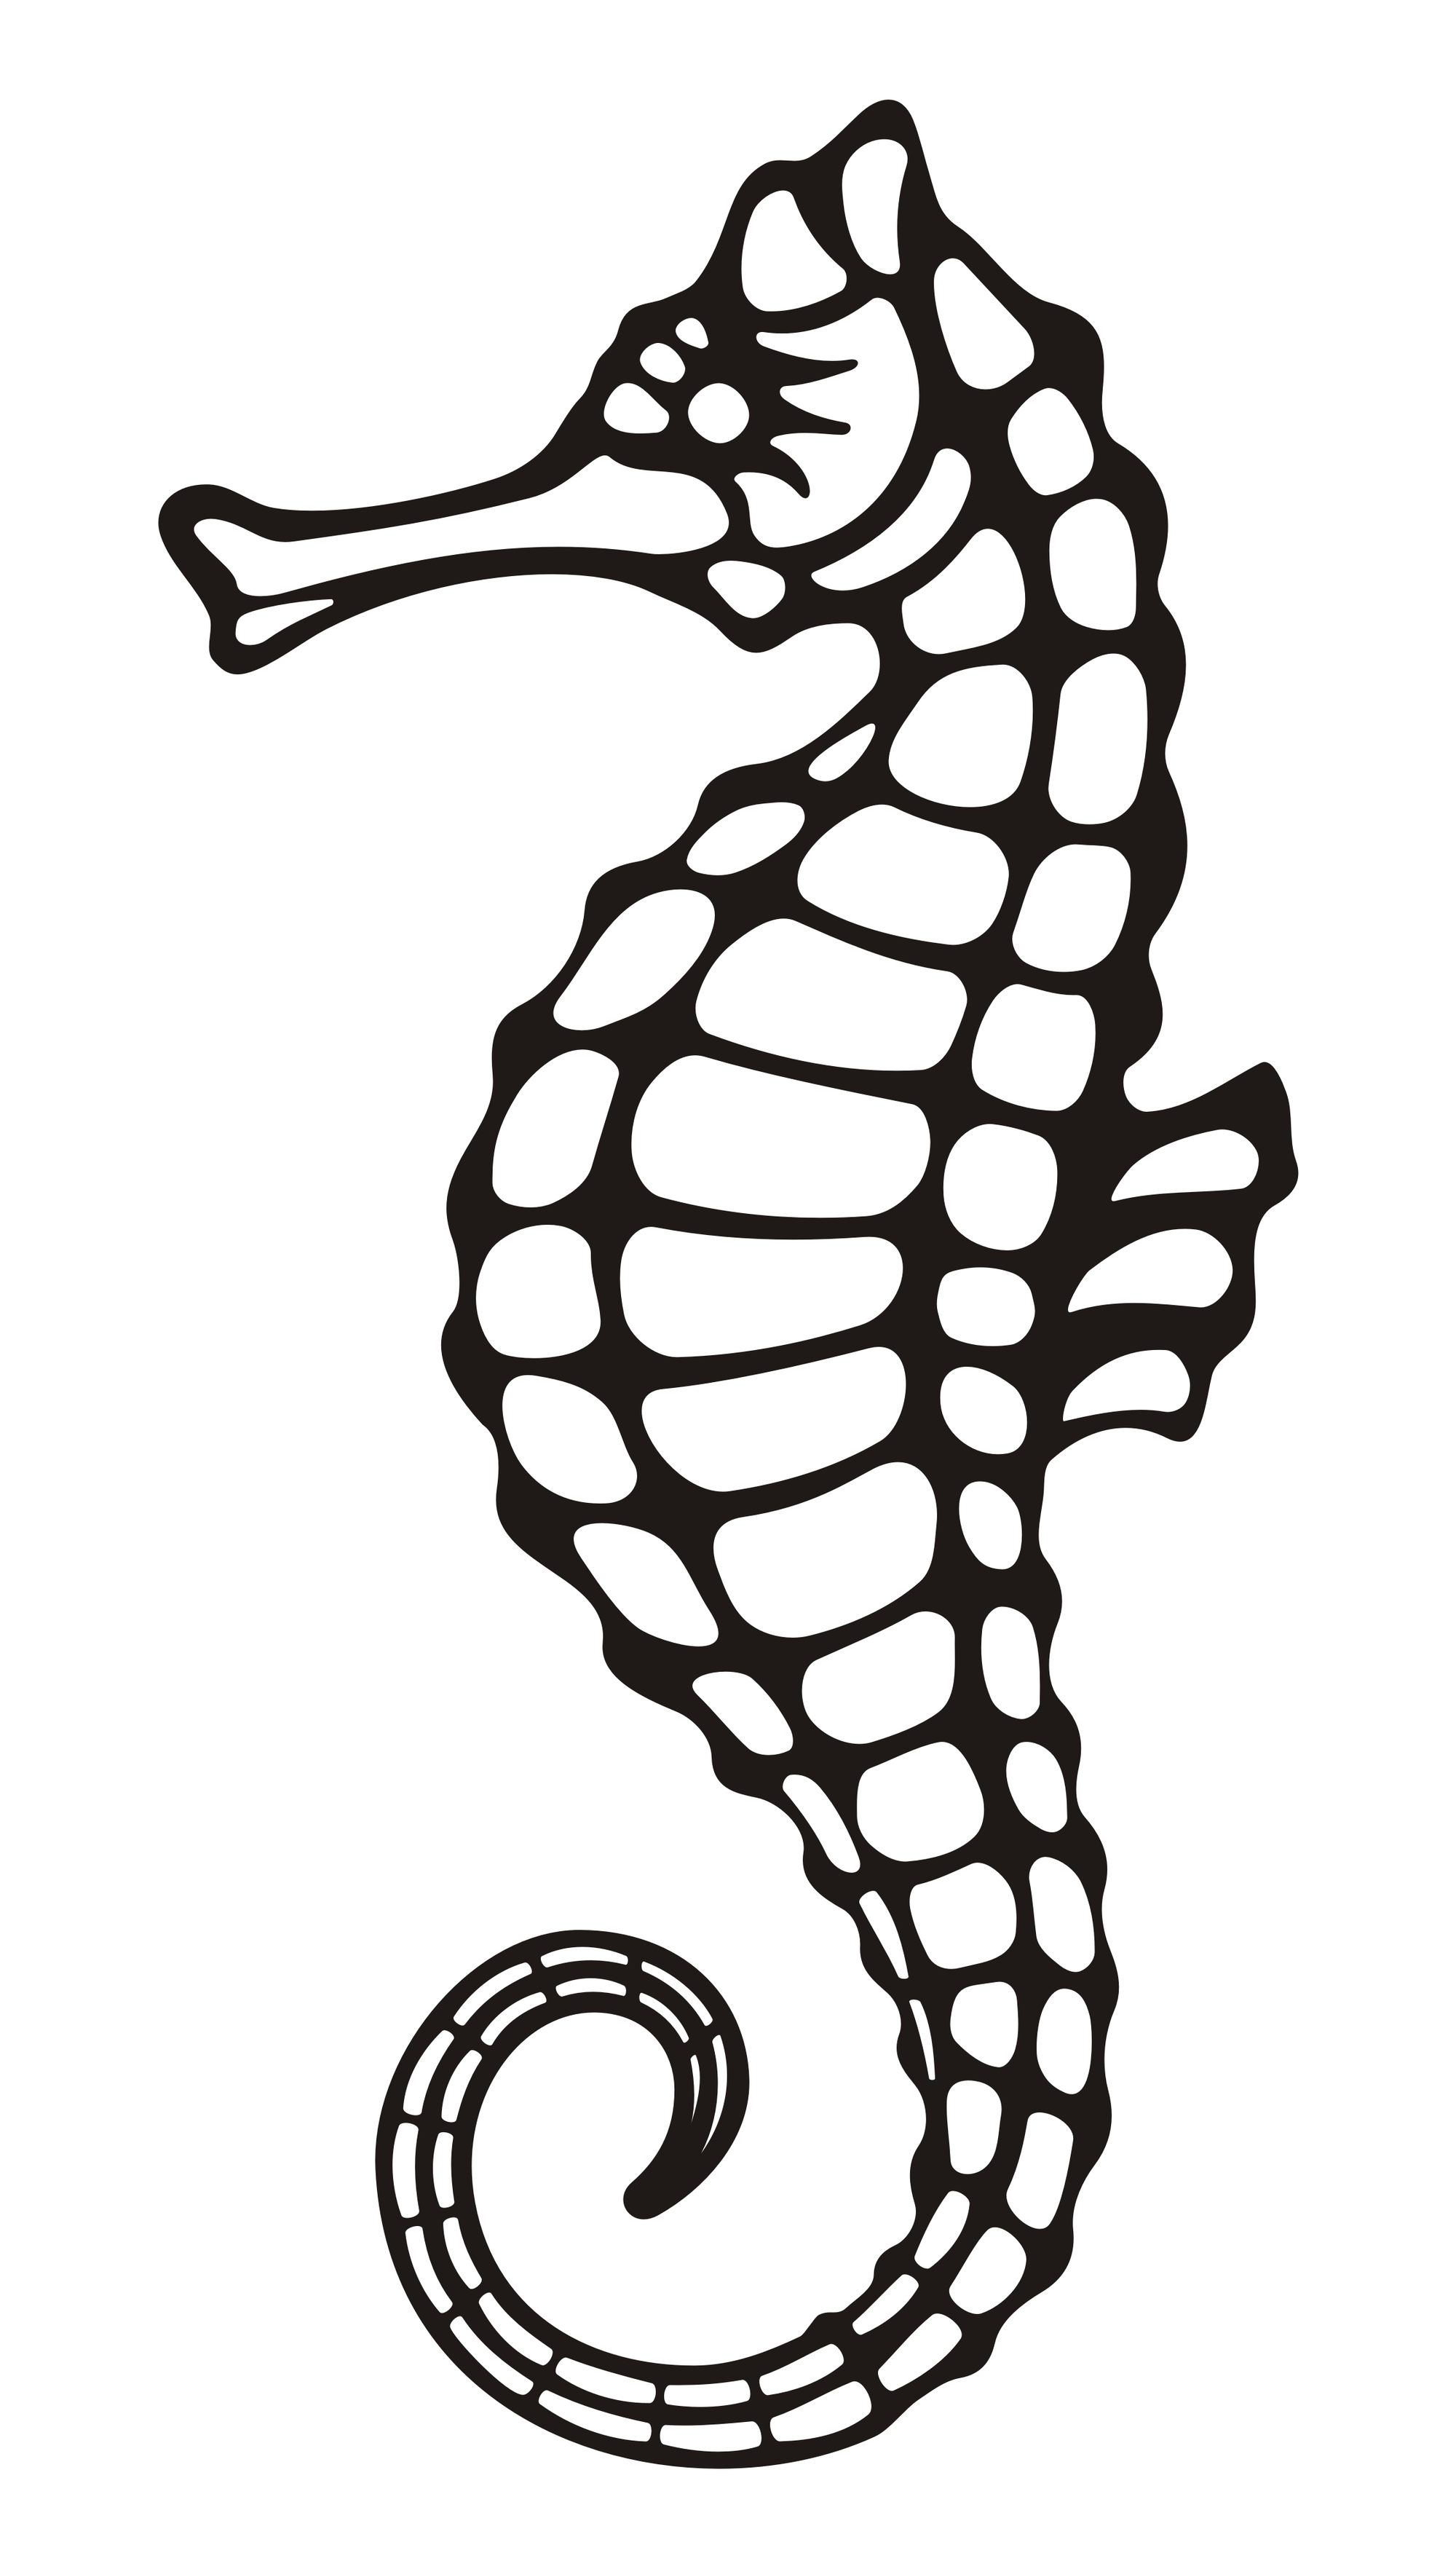 Seahorse Drawings